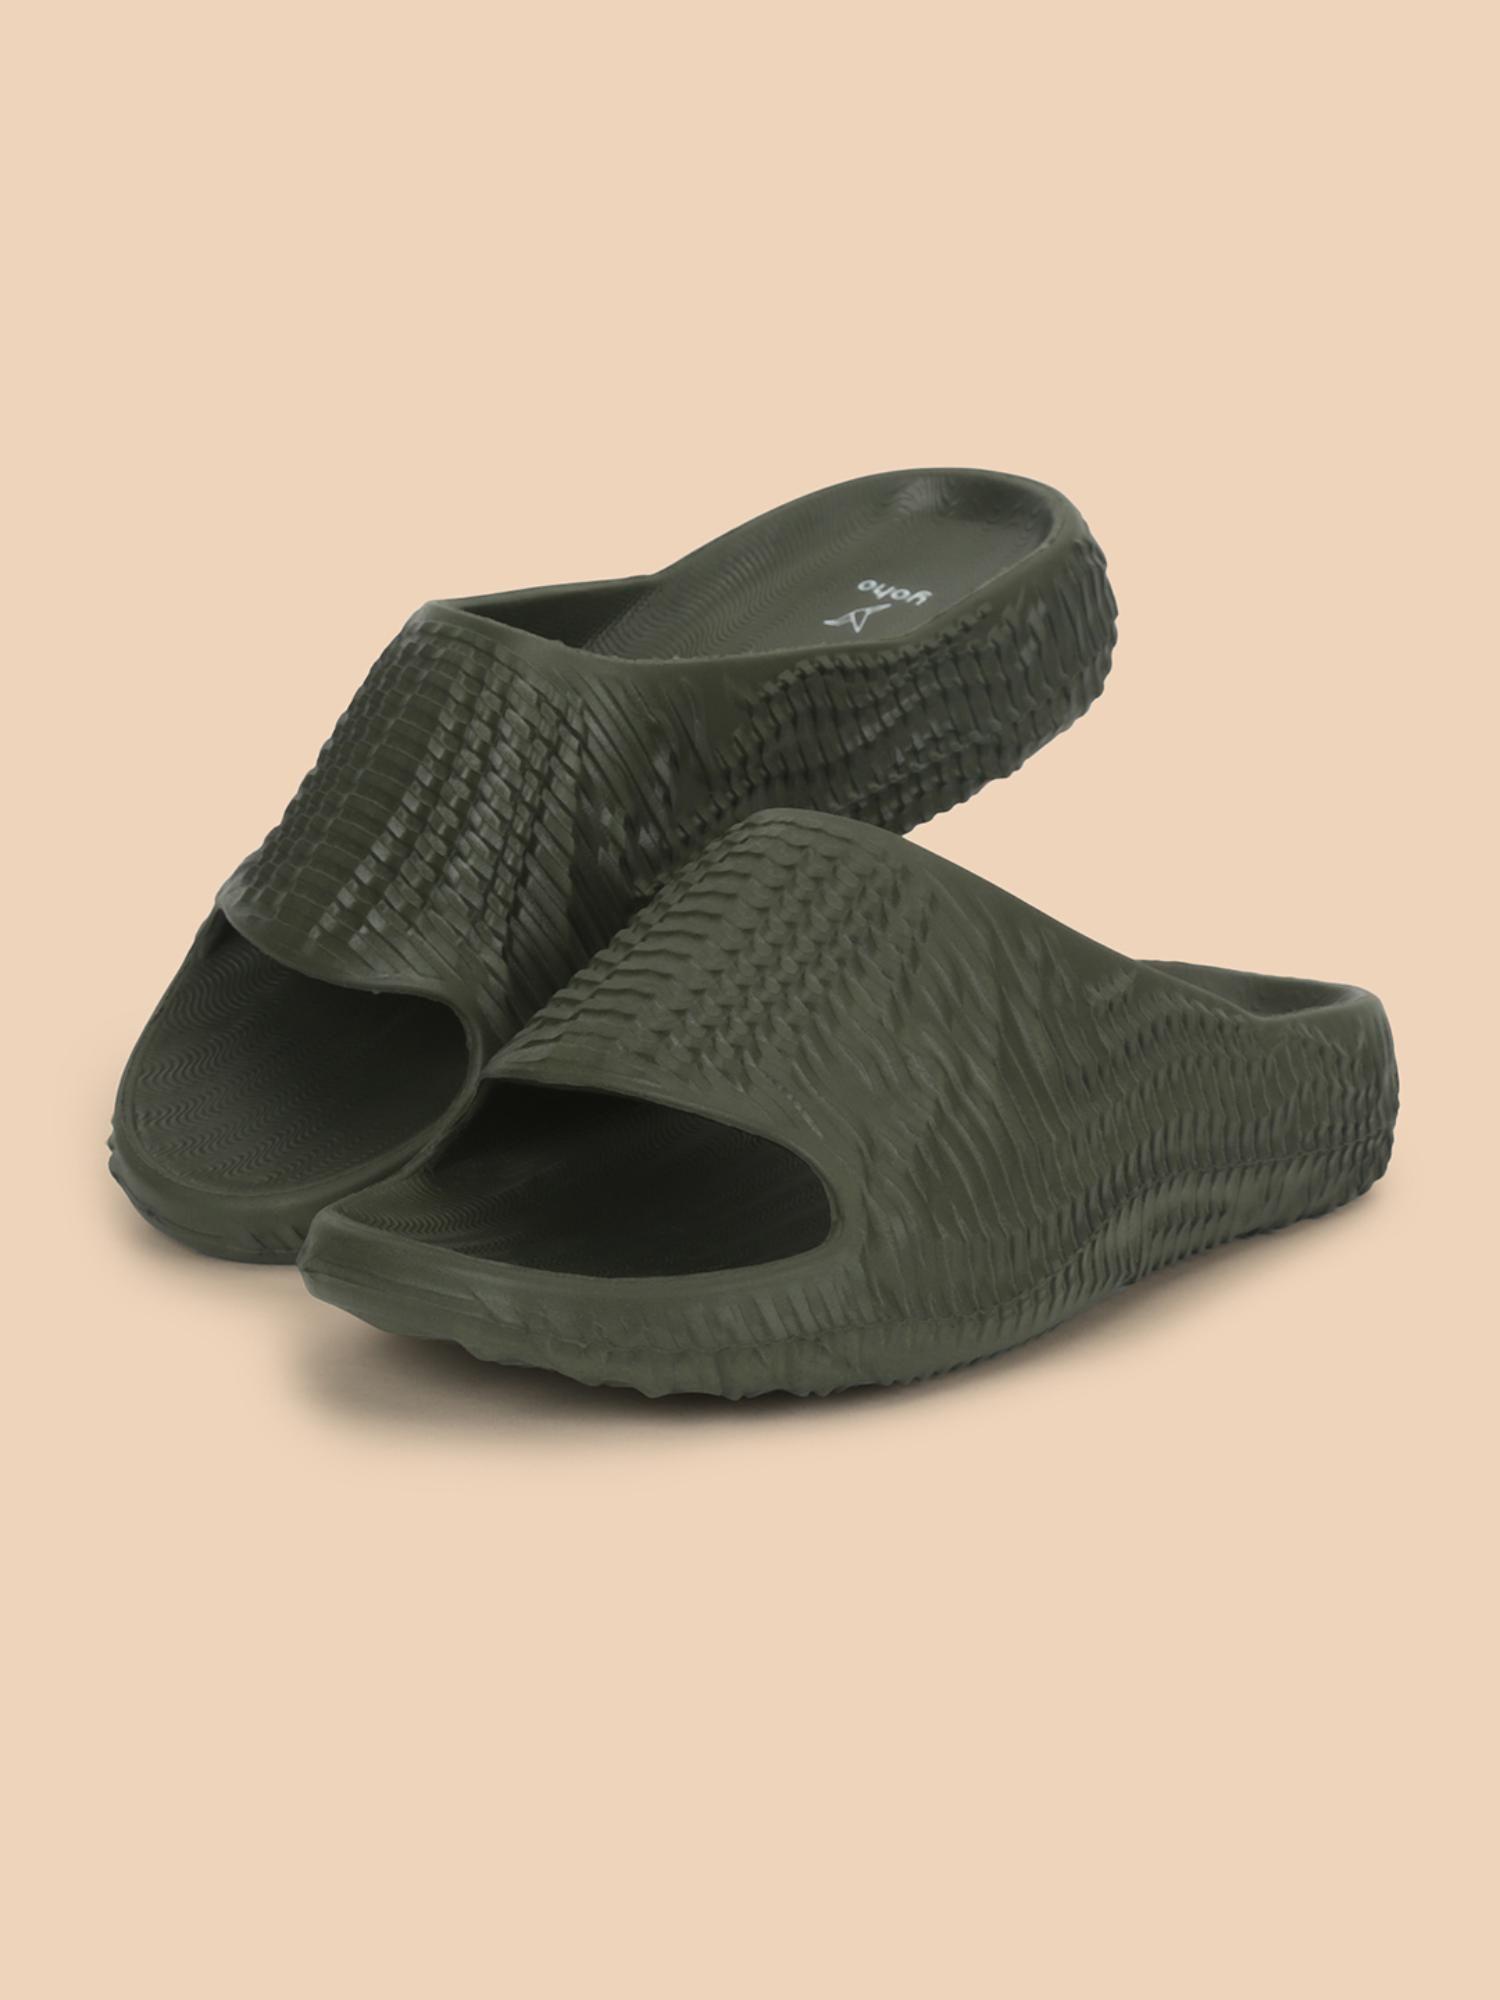 all-terrain sliders for men cushioned slippers lightweight